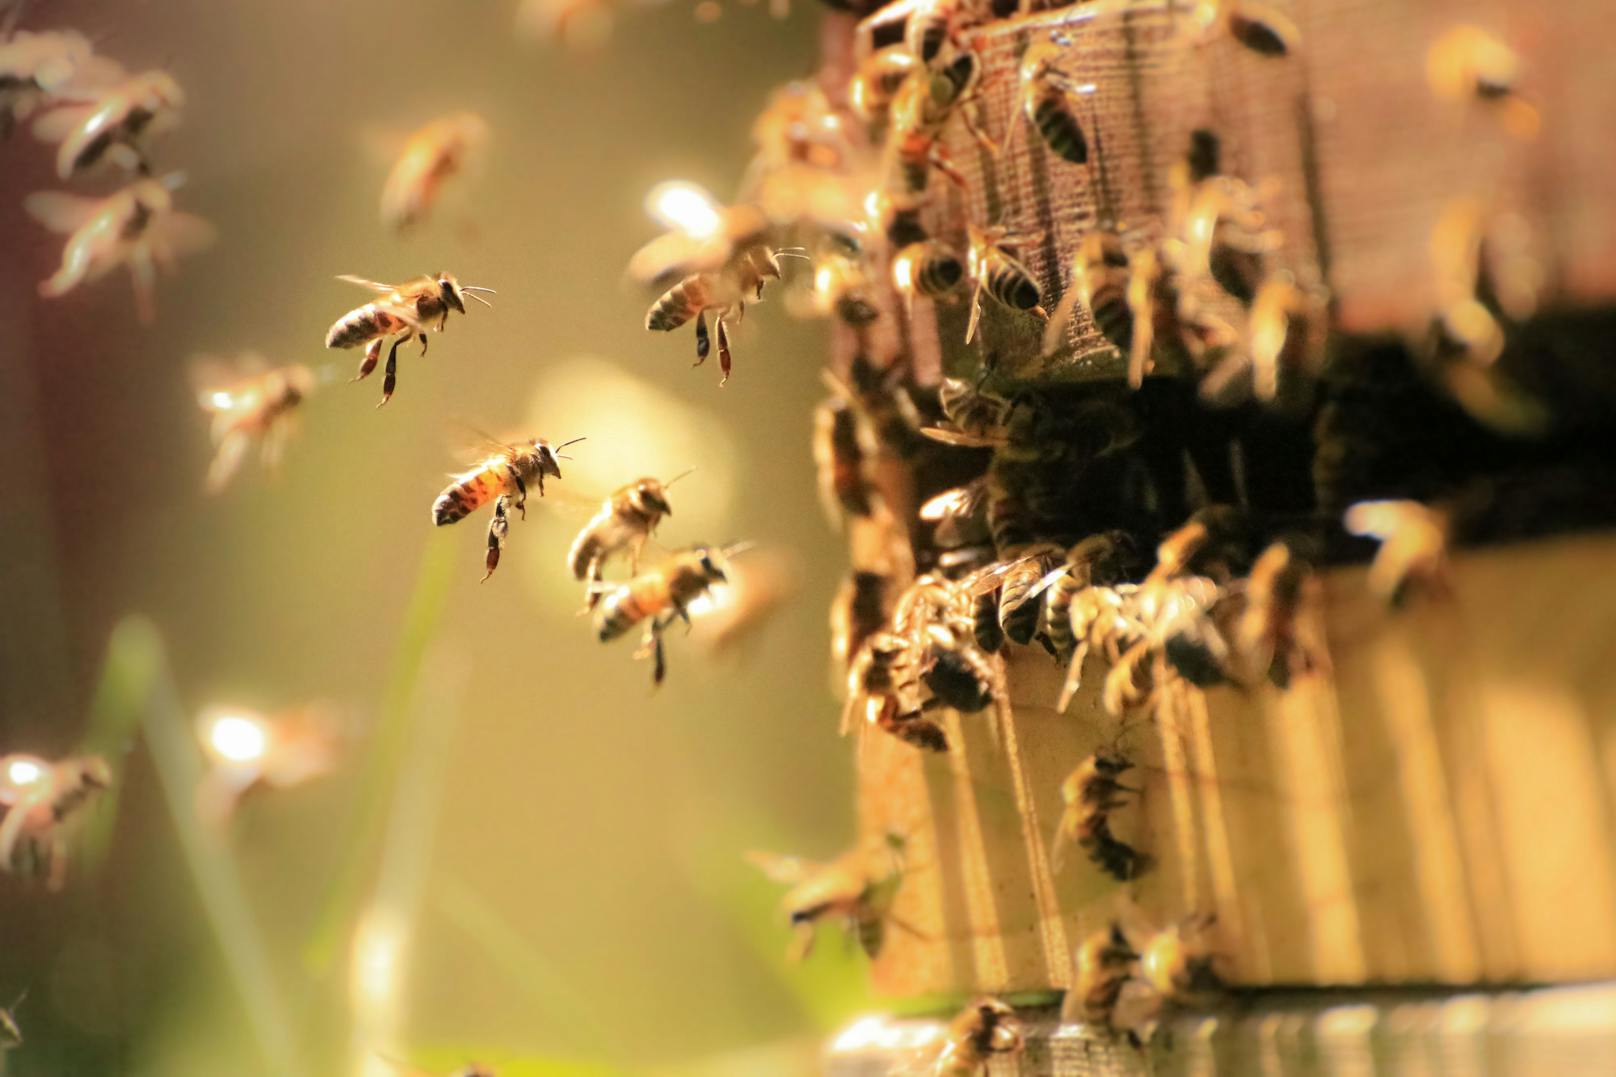 Tausende Bienen tot – Polizei fahndet nach Tierquäler